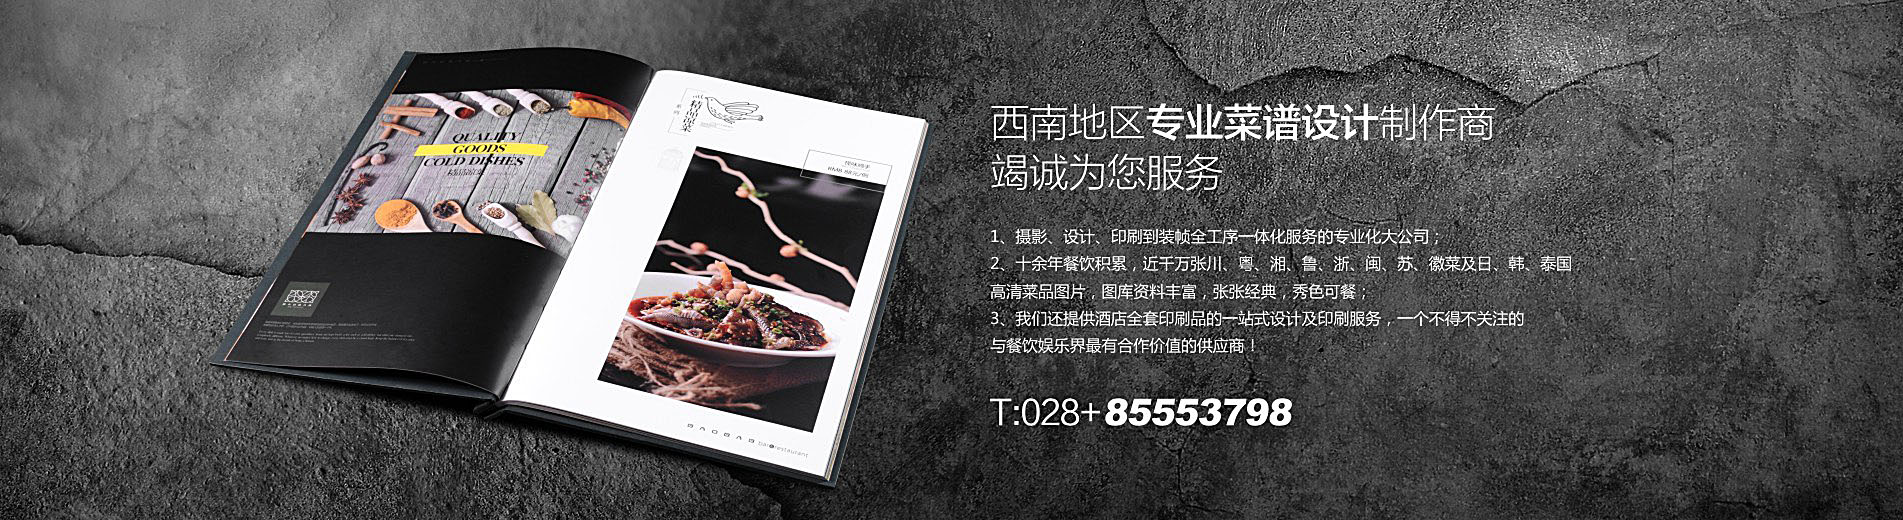 岷山饭店菜单设计制作-中餐厅菜谱定制-捷达餐饮品牌设计公司